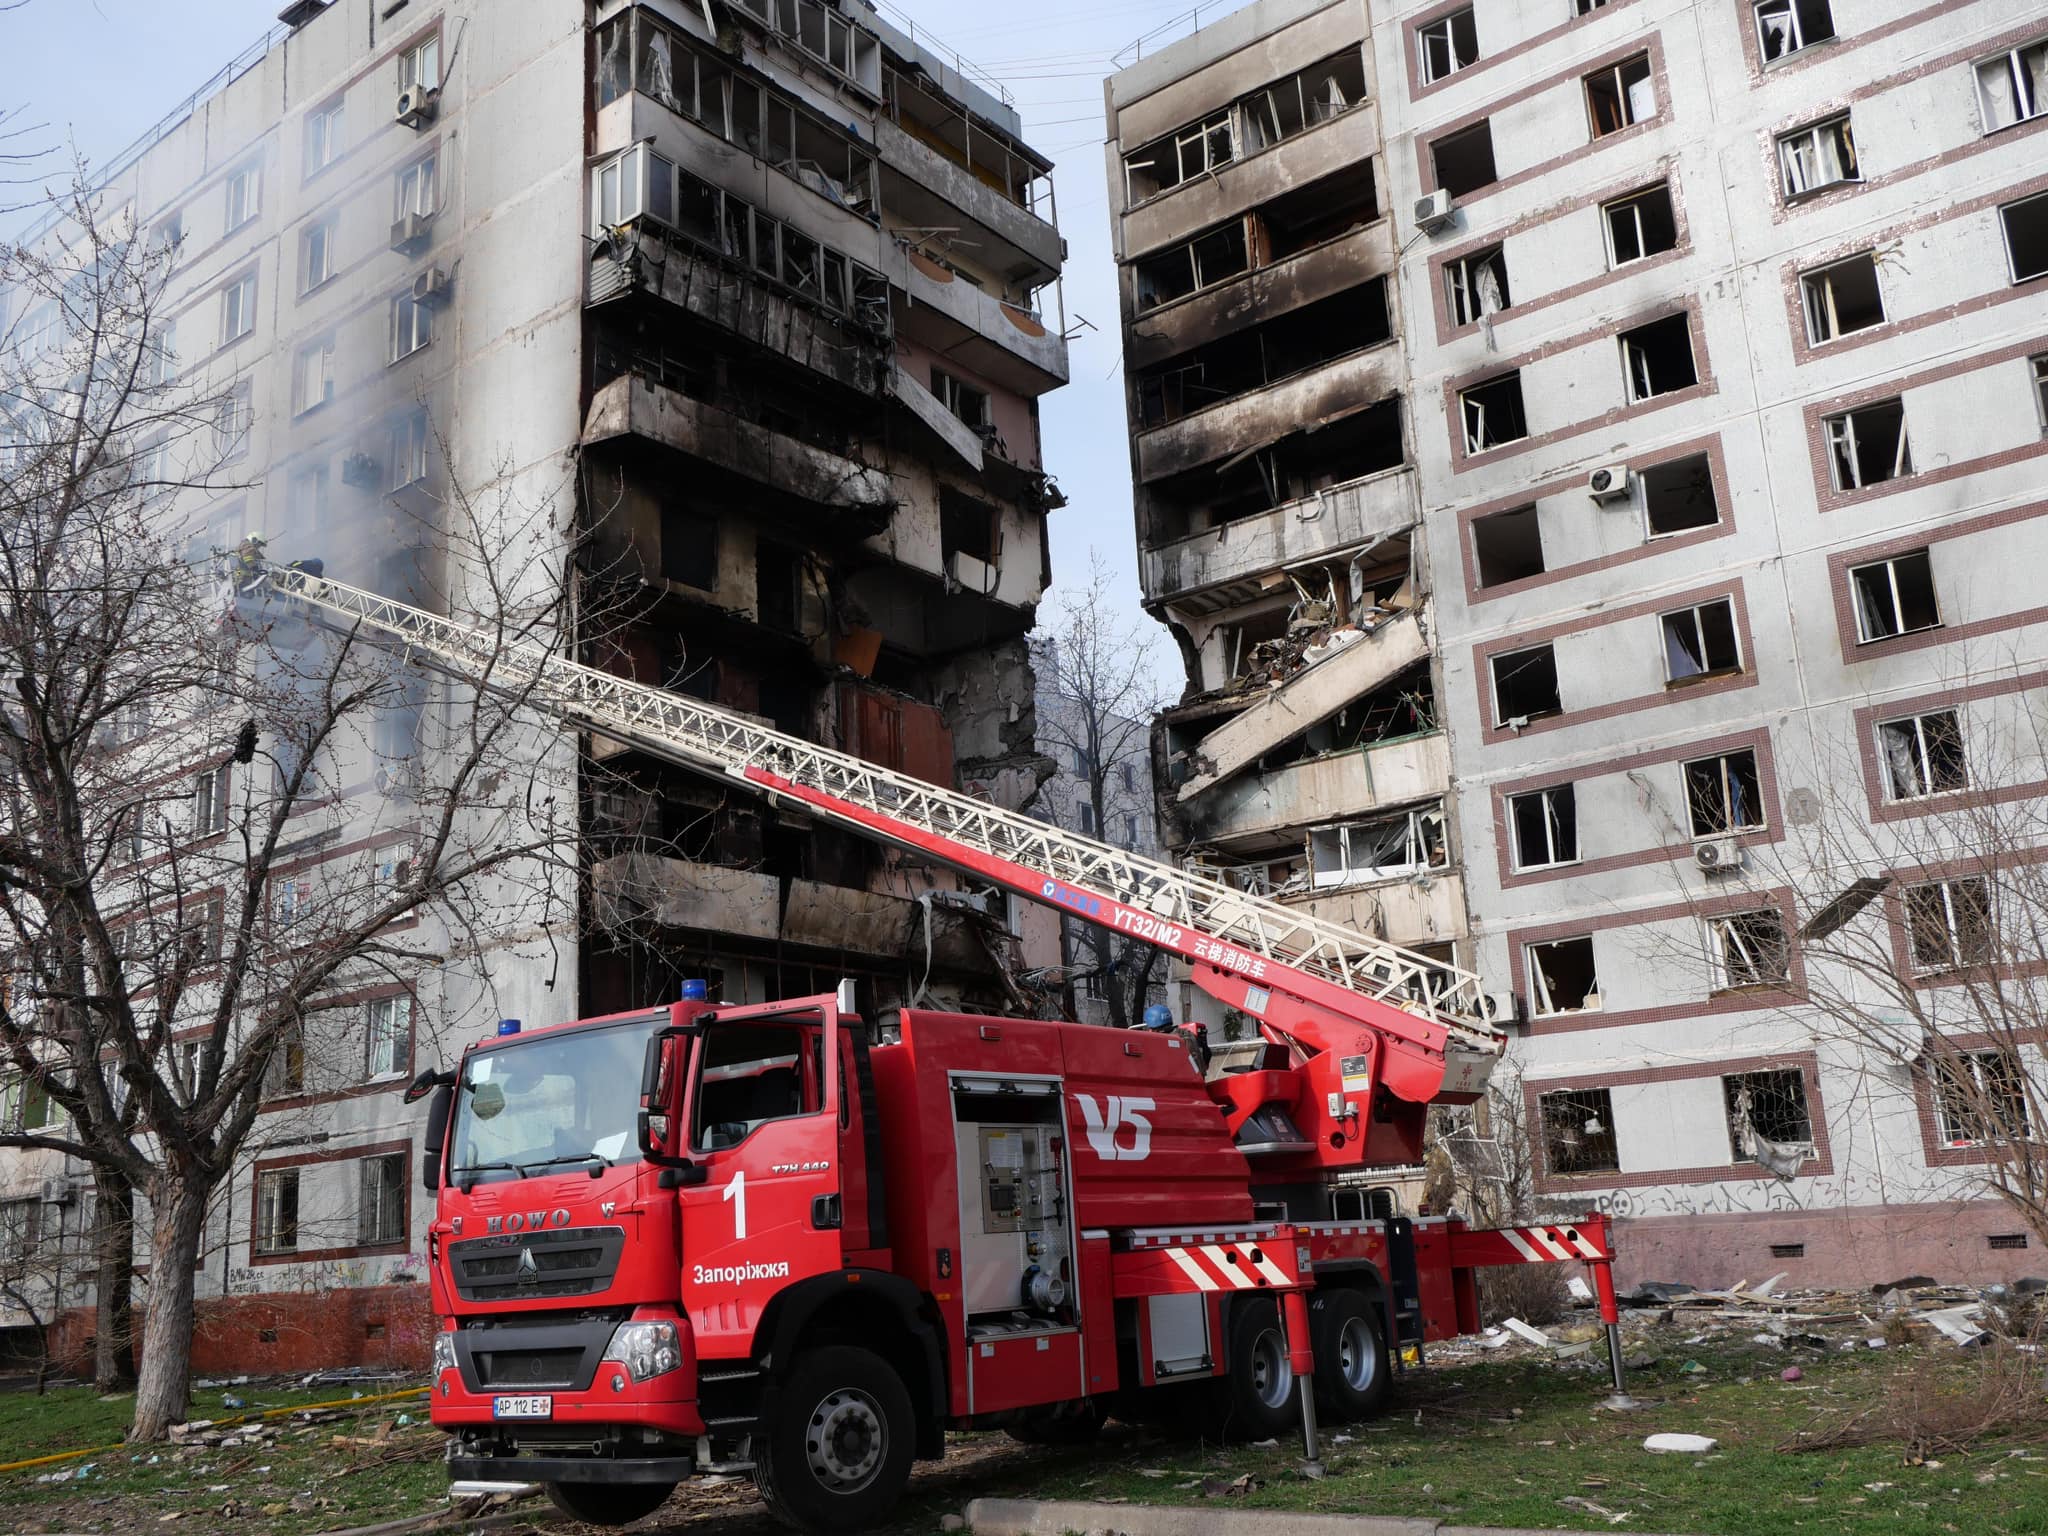 Рятувальна операція в Запоріжжі завершена: від російської атаки загалом 34 людини постраждали, з них троє дітей, одна людина померла (ФОТО) 17